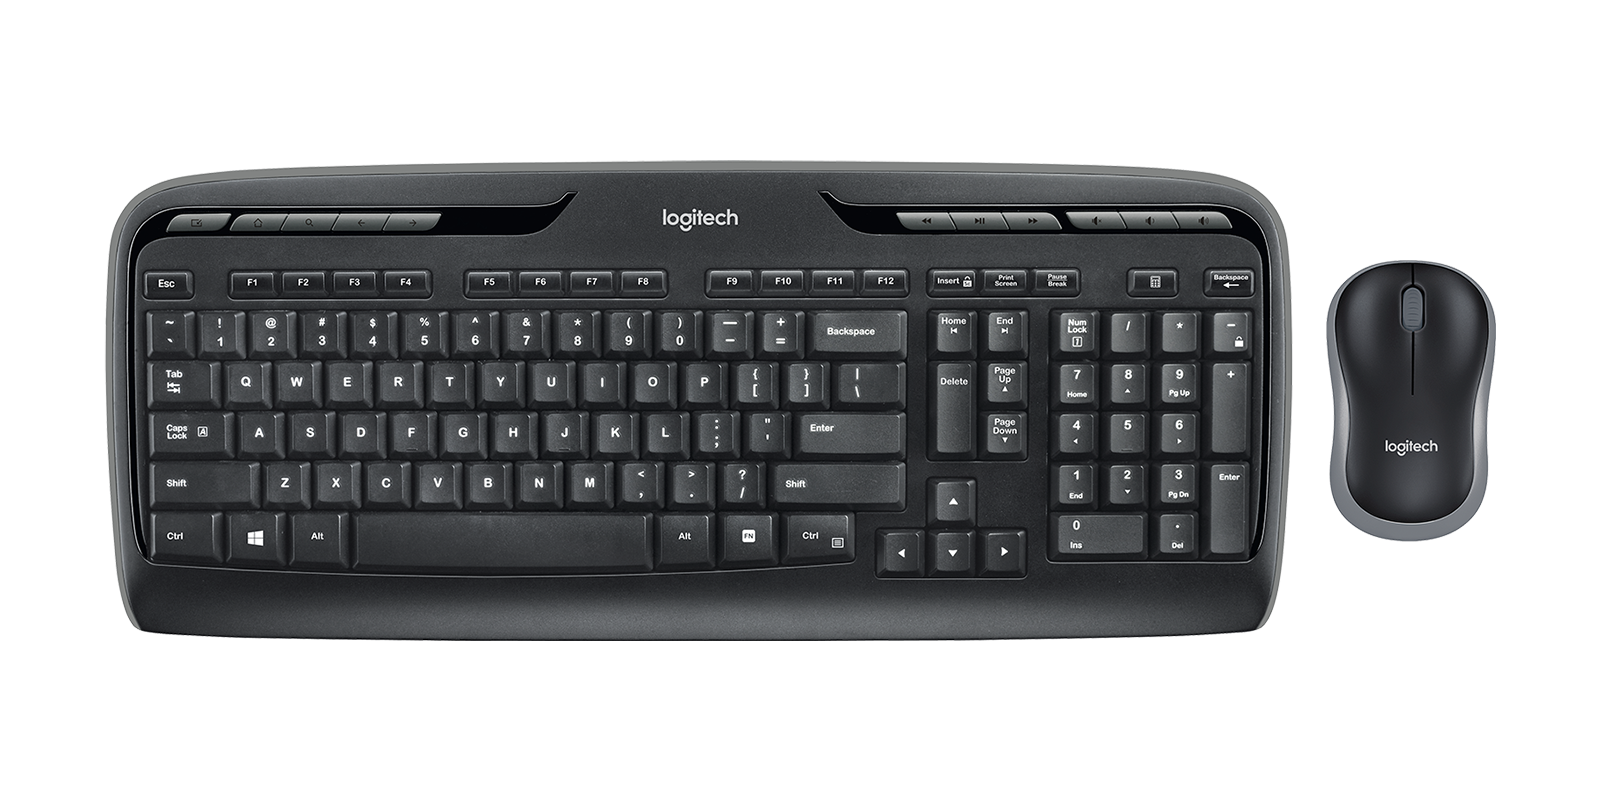 Agarrar Actual Vacío Logitech MK320 Portable Wireless Keyboard Mouse Combo